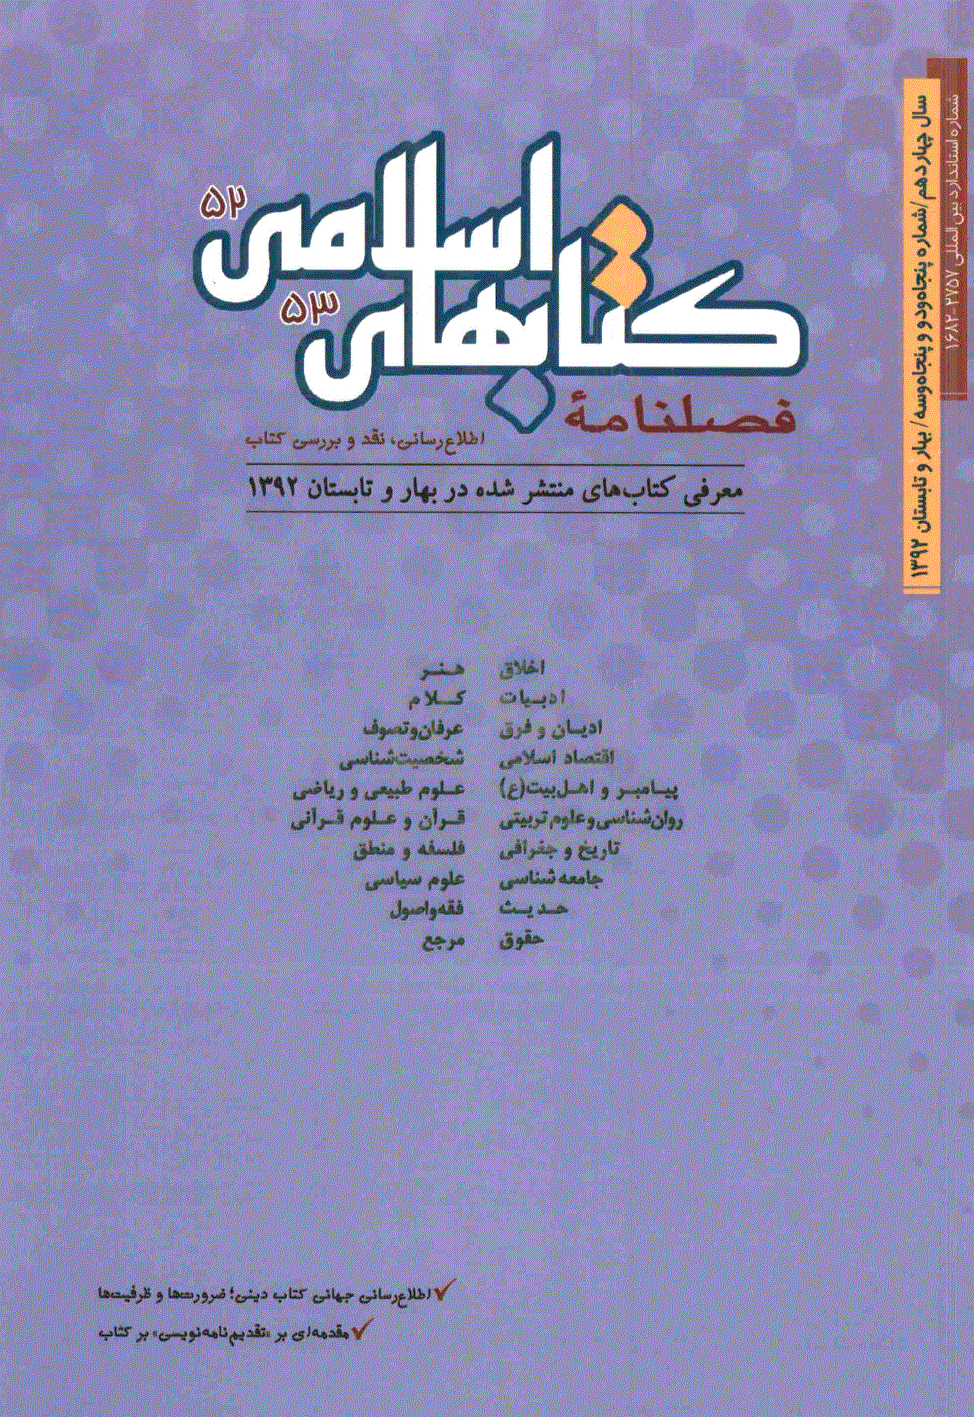 کتابهای اسلامی - بهار و تابستان 1392، سال چهاردهم - شماره 52 و 53